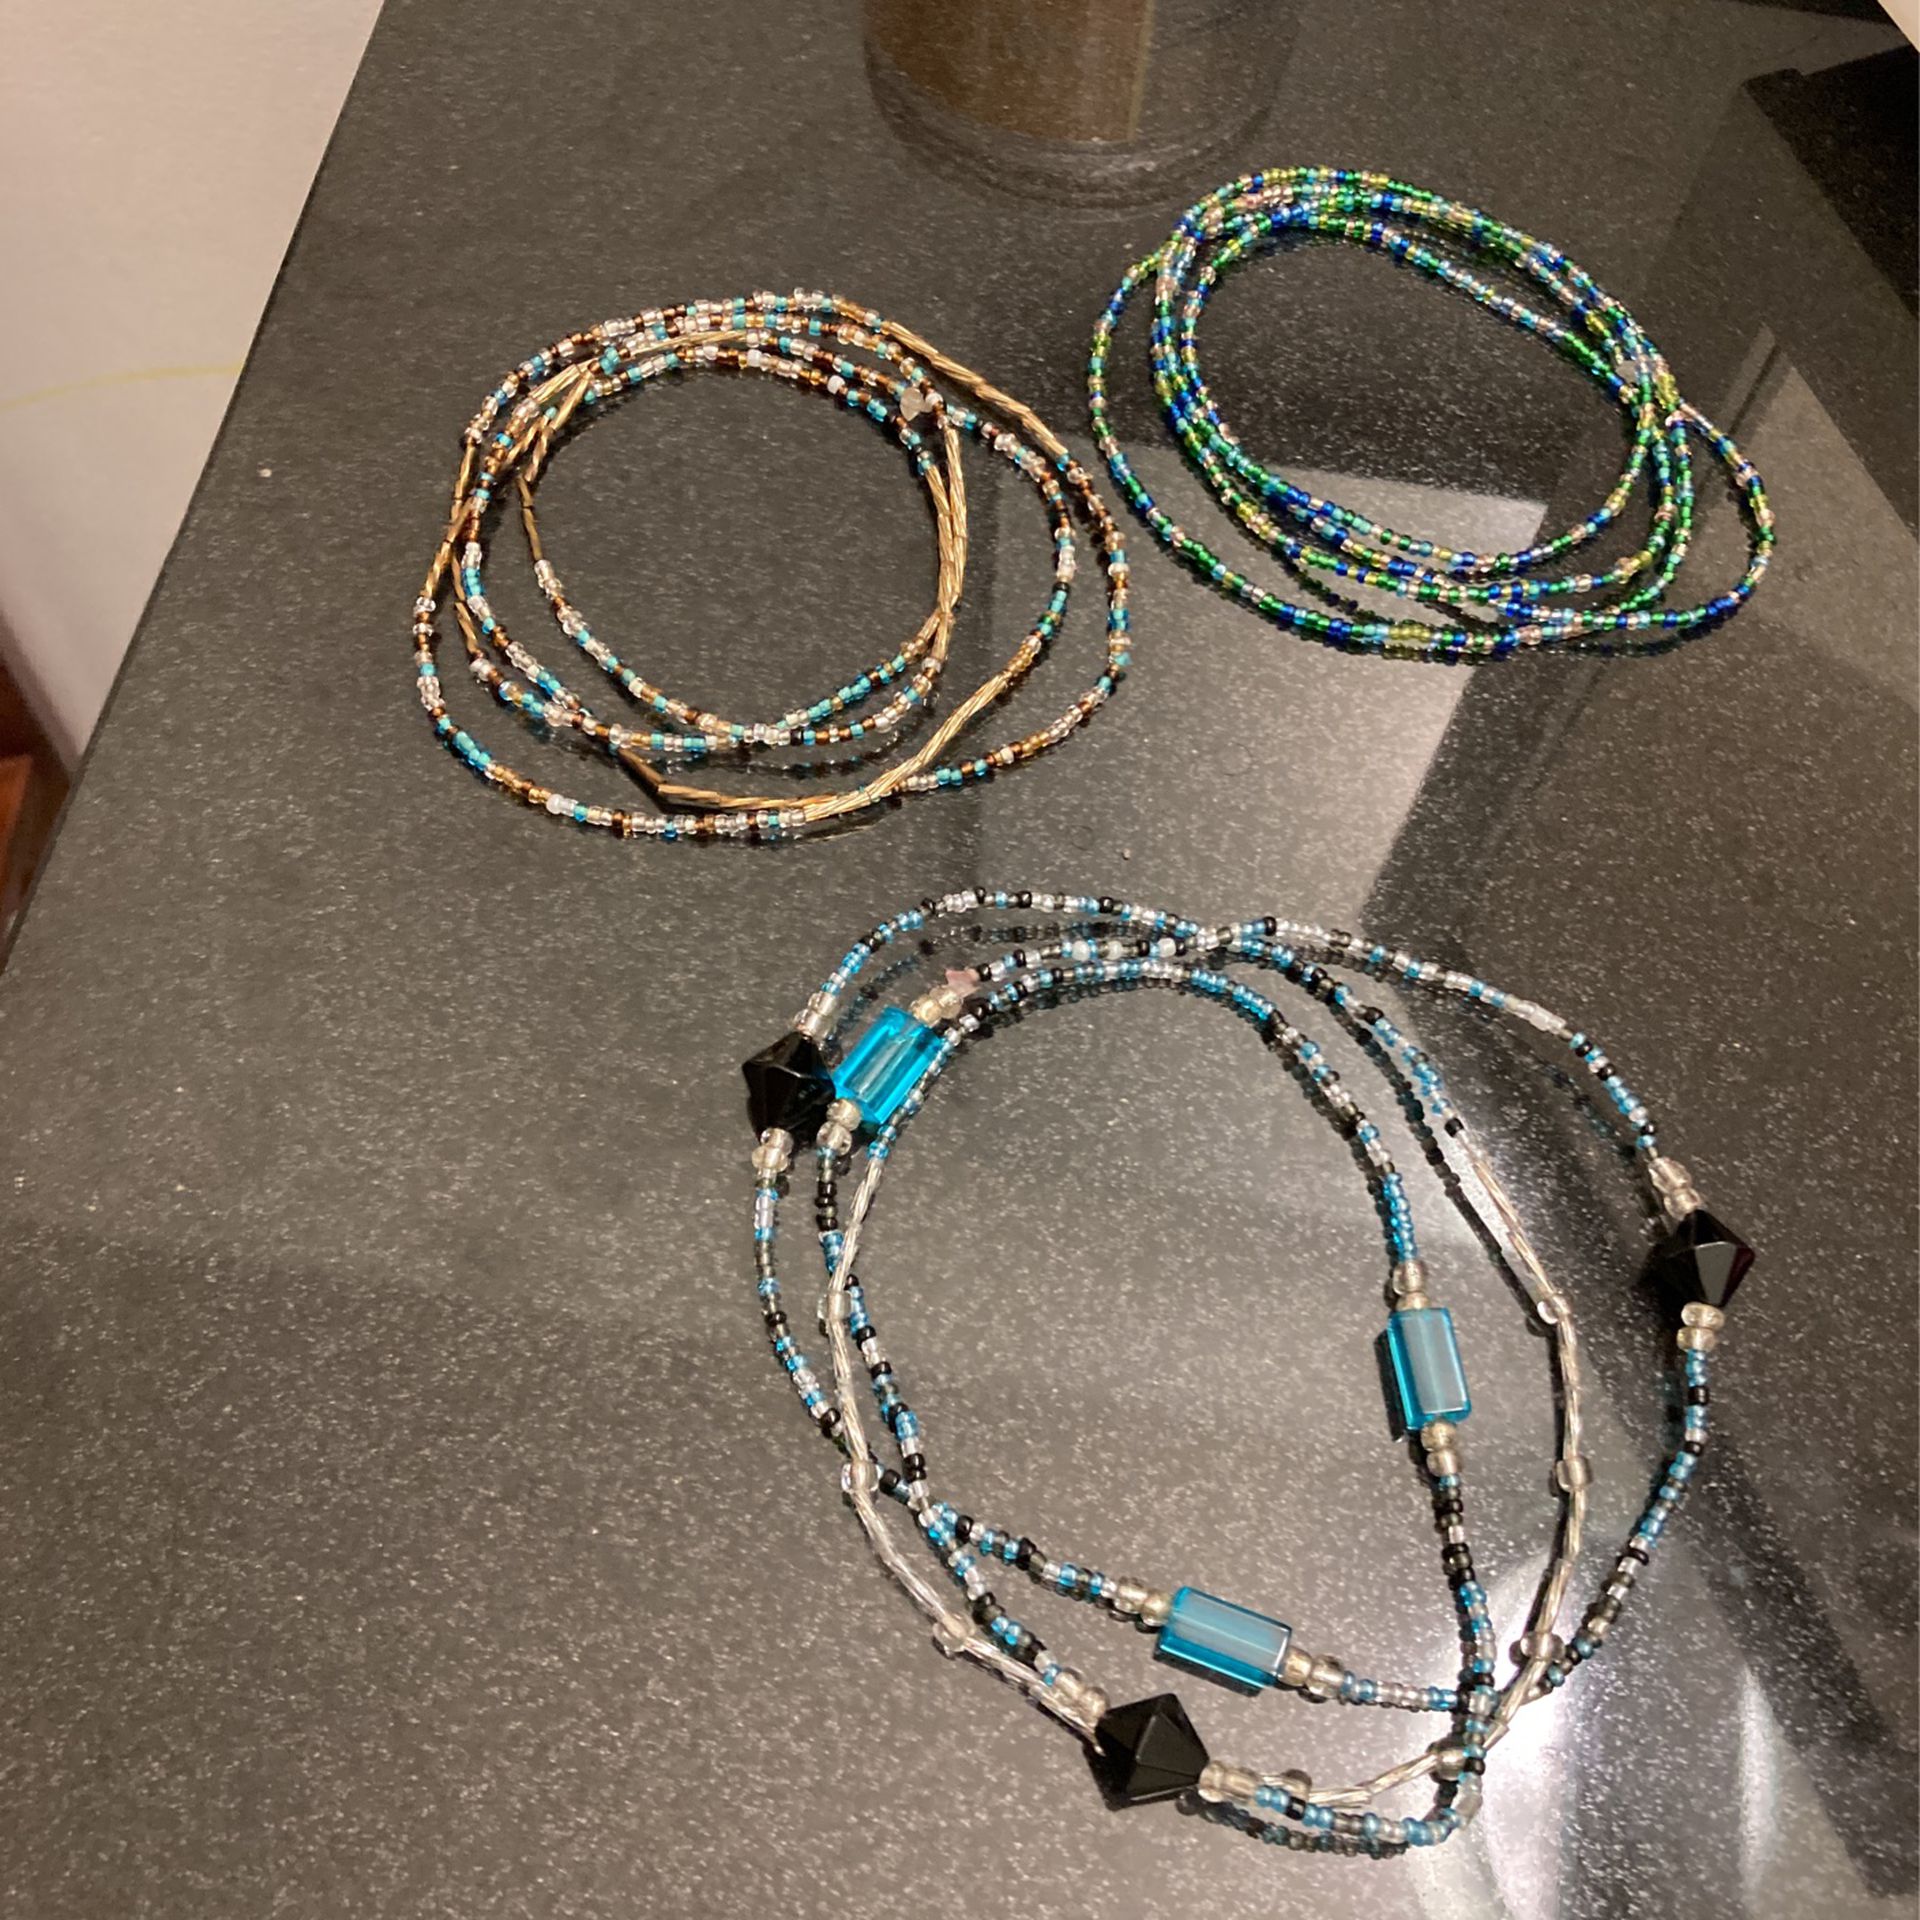 Waist Beads And Beyond